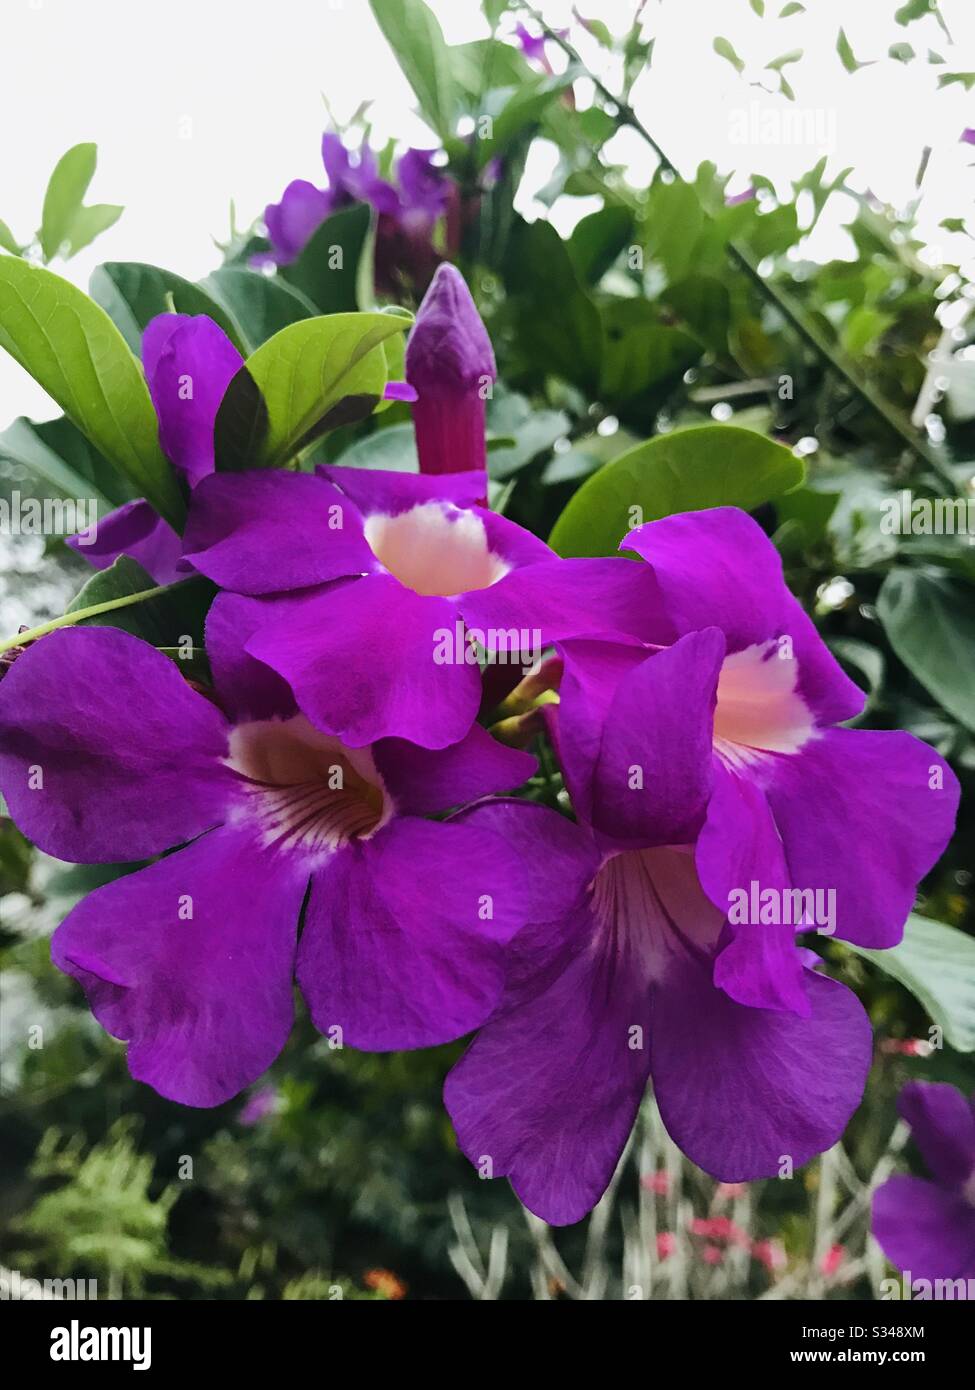 Trinidad Pink Trumpet Vine-Mansoa alliacea aka ail vine dans le jardin de ma mère en inde - fleur violette, fleur de vigne violette - gros bouquet de fleurs violettes dans un seul pédoncule partiellement ombragé Banque D'Images